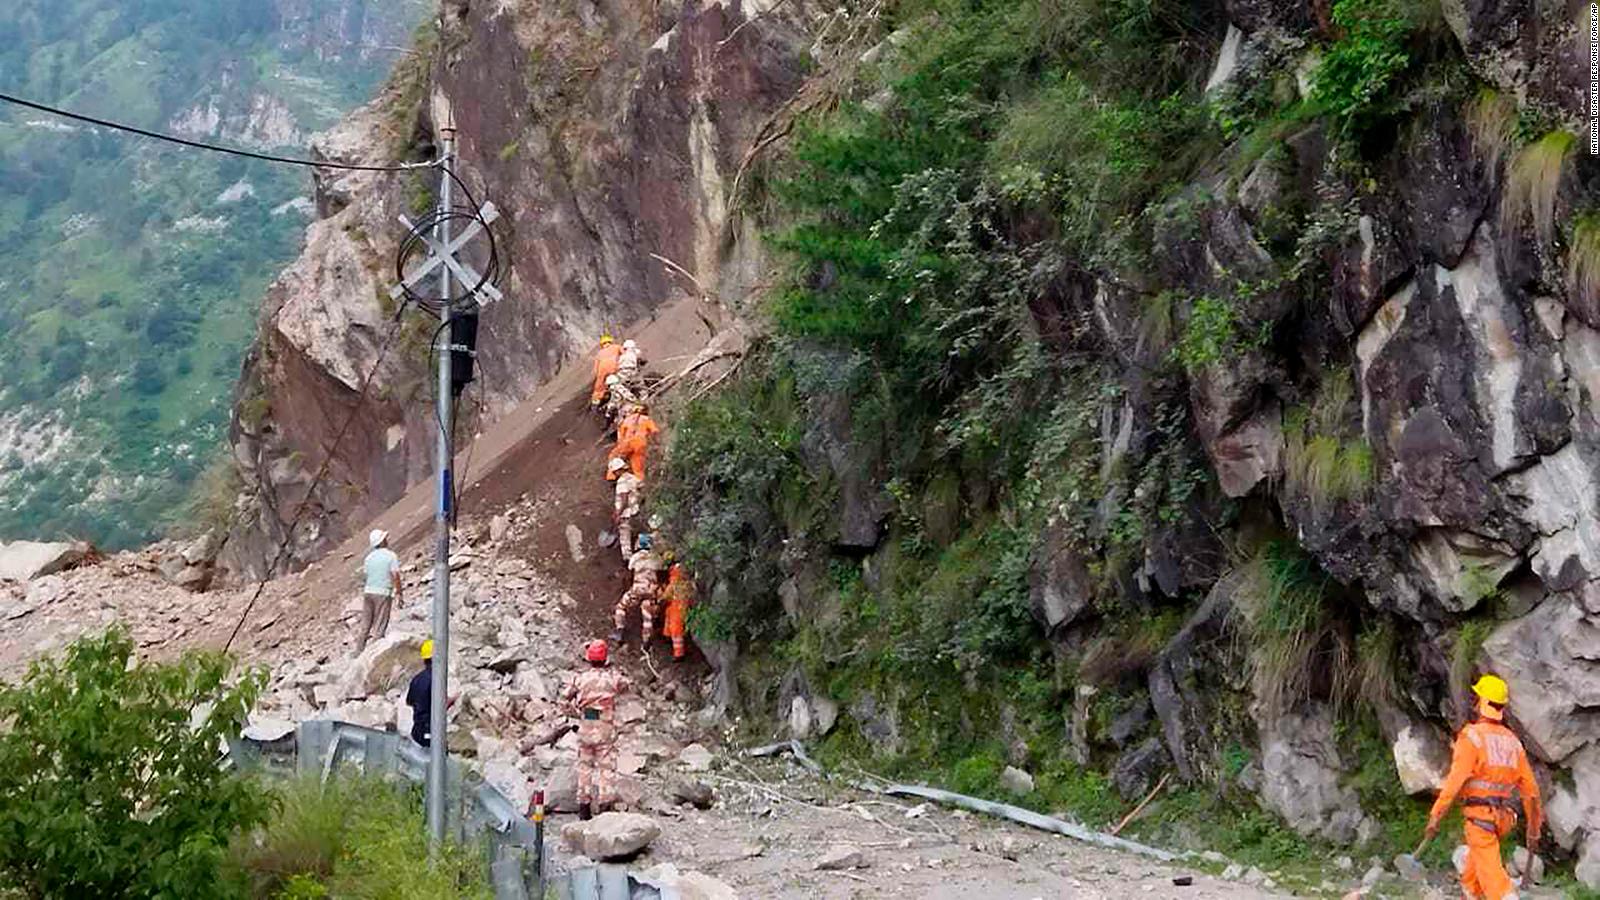 case study on landslide in india